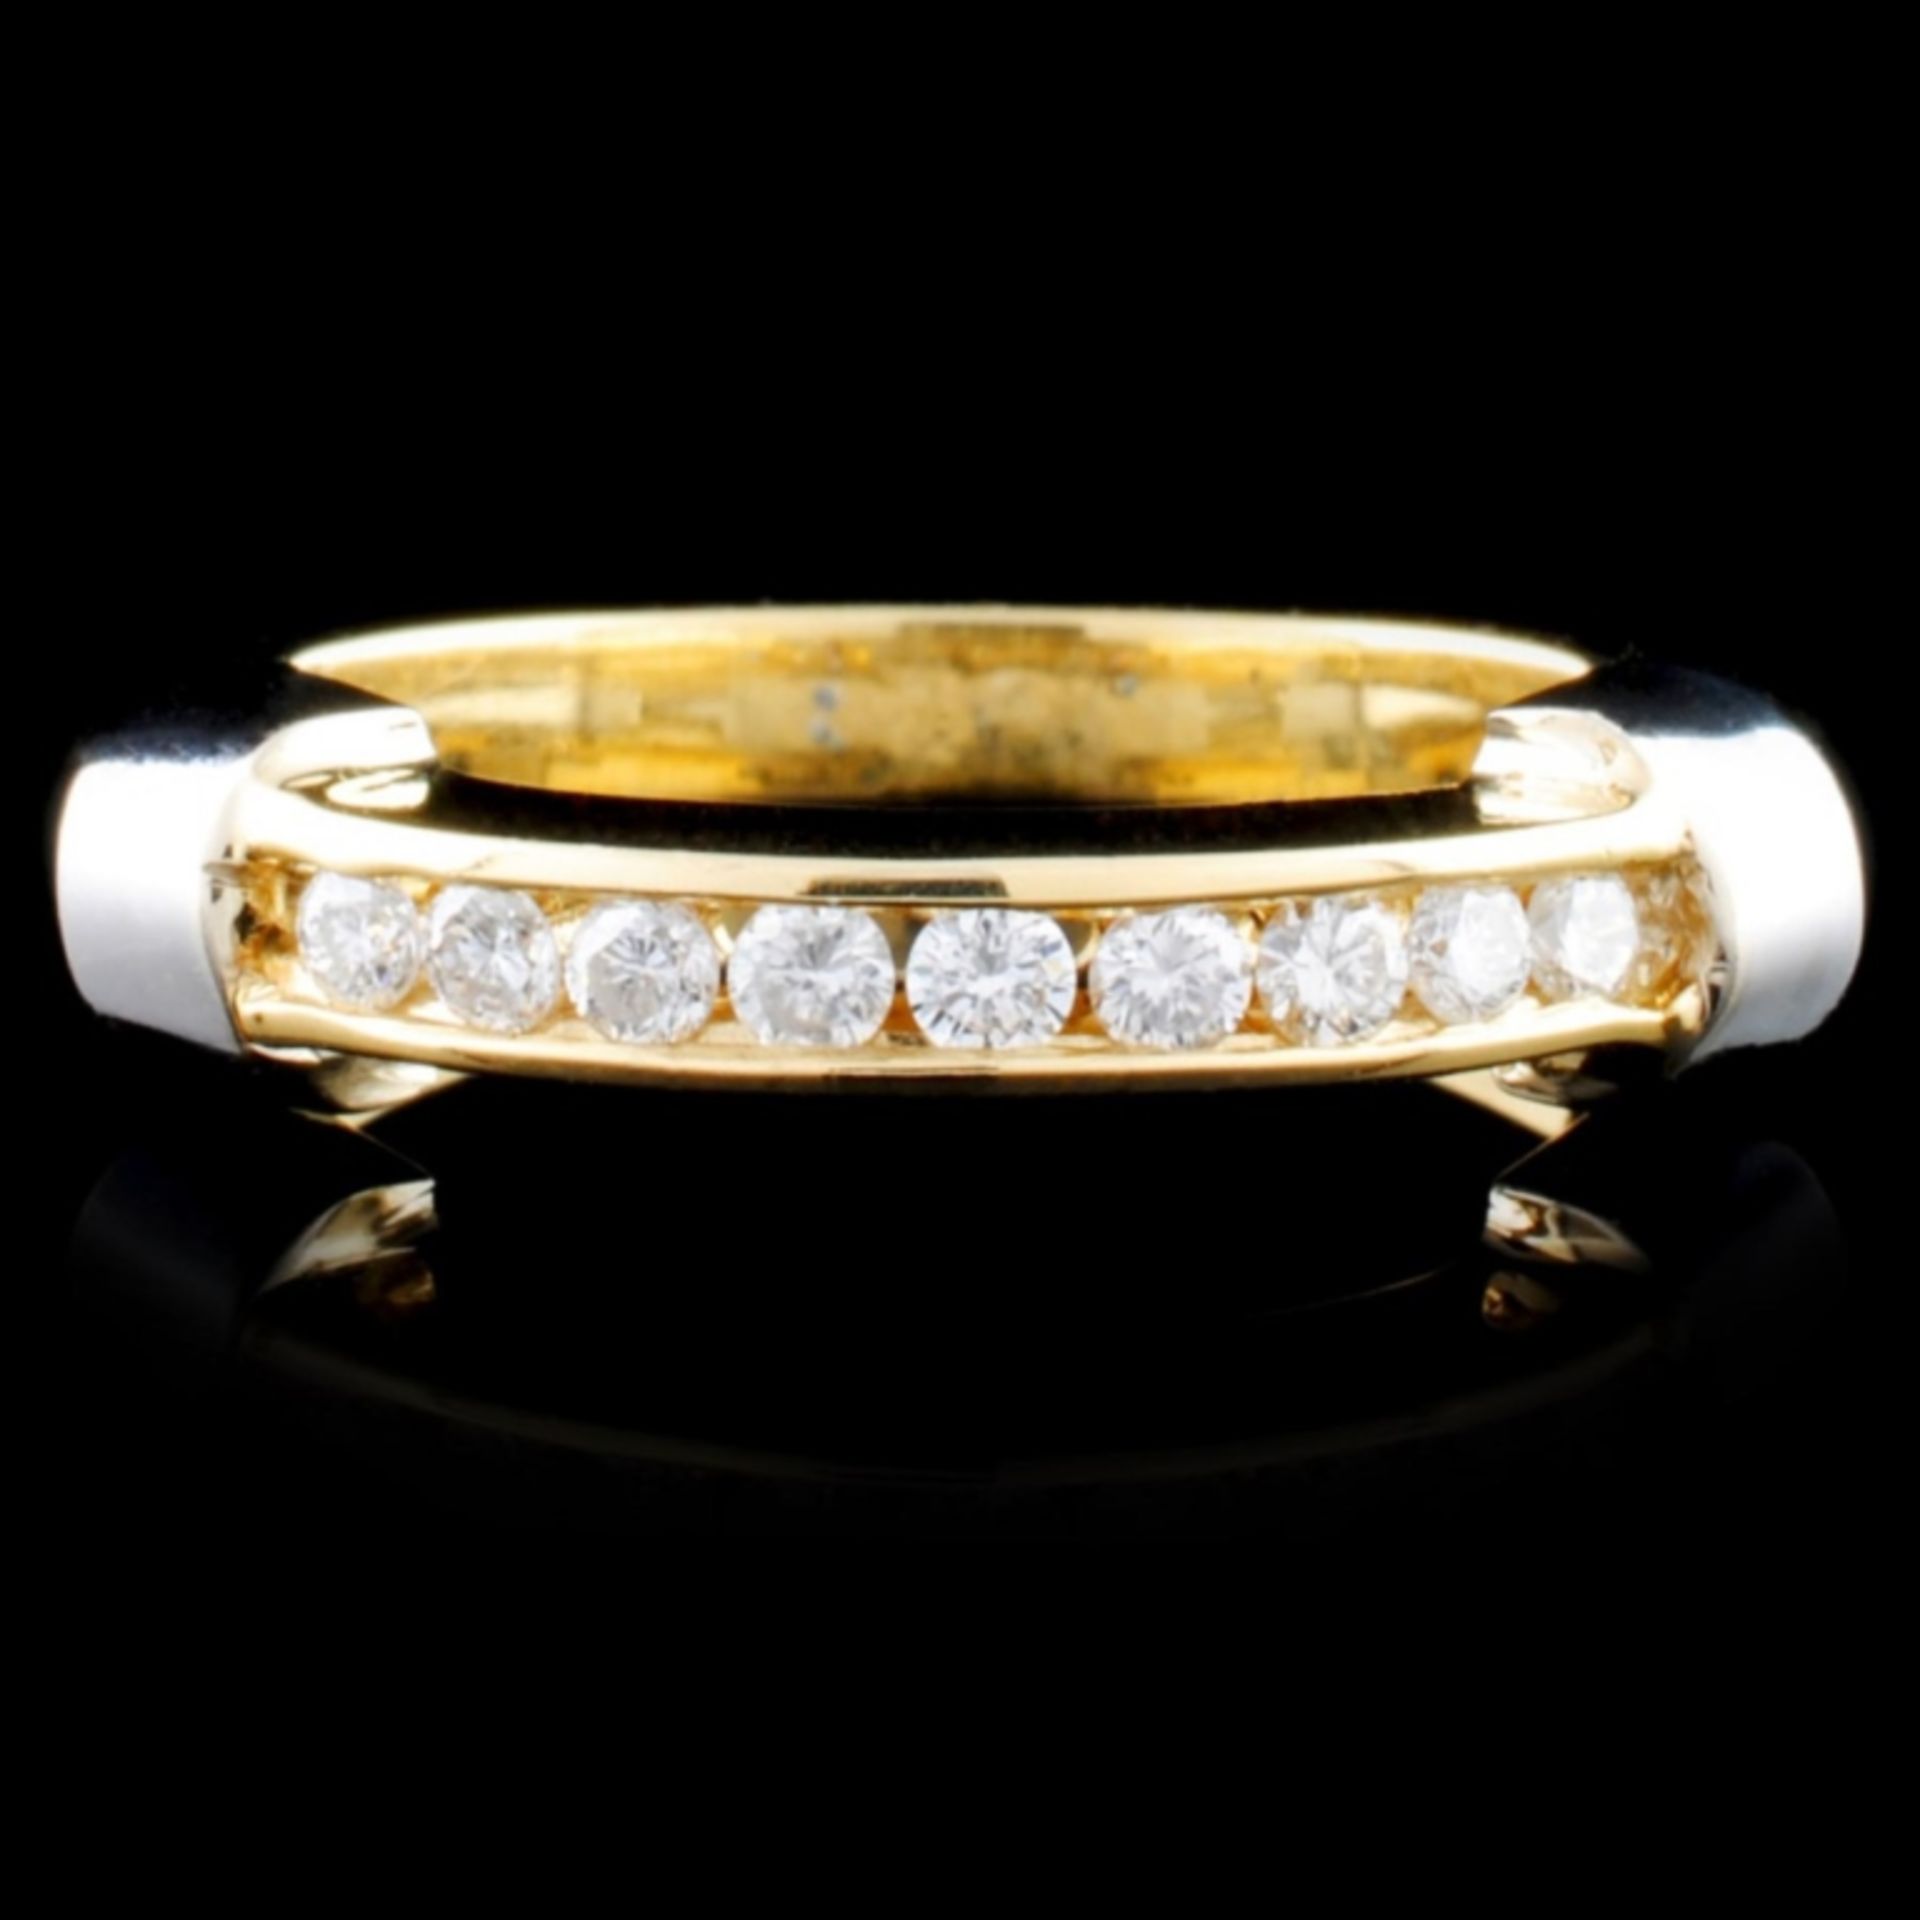 14K TT Gold 0.25ctw Diamond Ring - Image 2 of 3